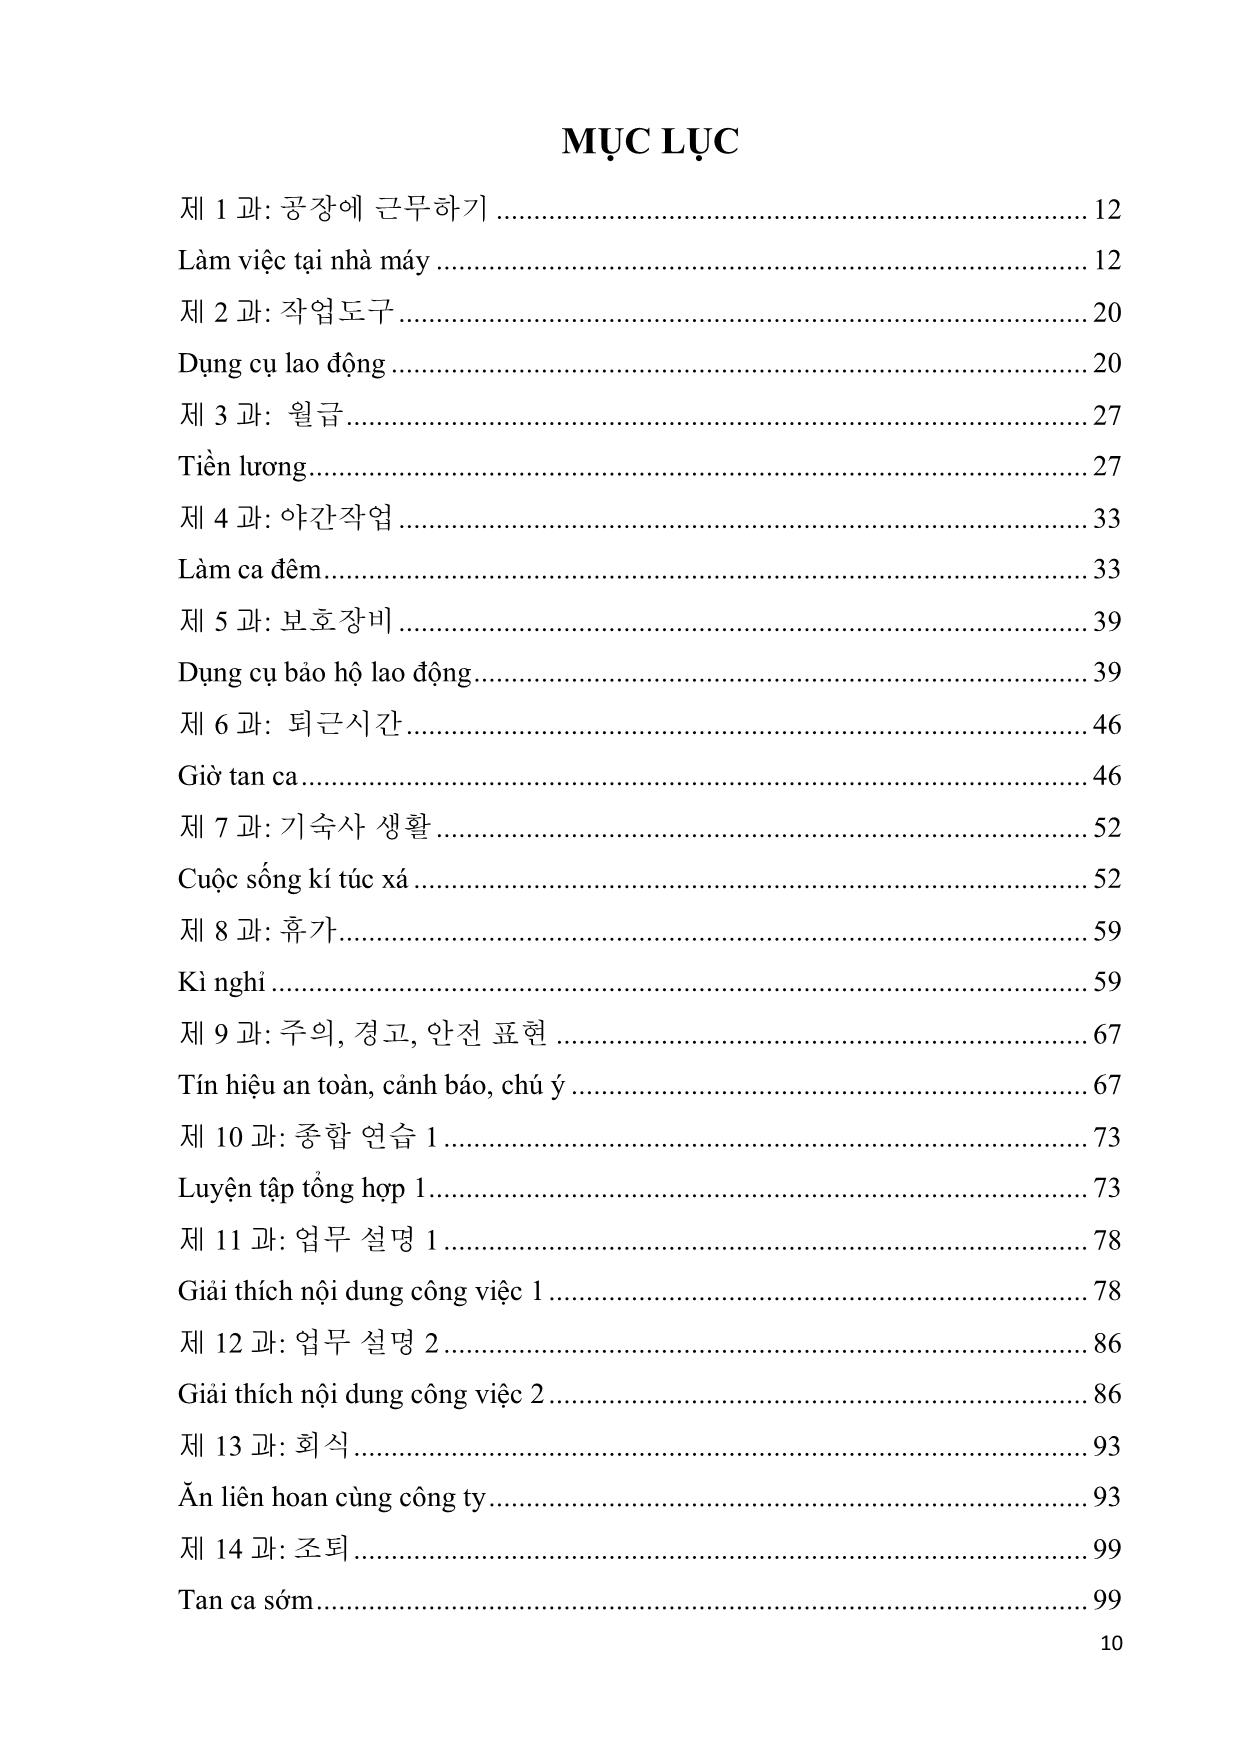 Giáo trình Chương trình tiếng Hàn dùng trong sản xuất chế tạo trang 10